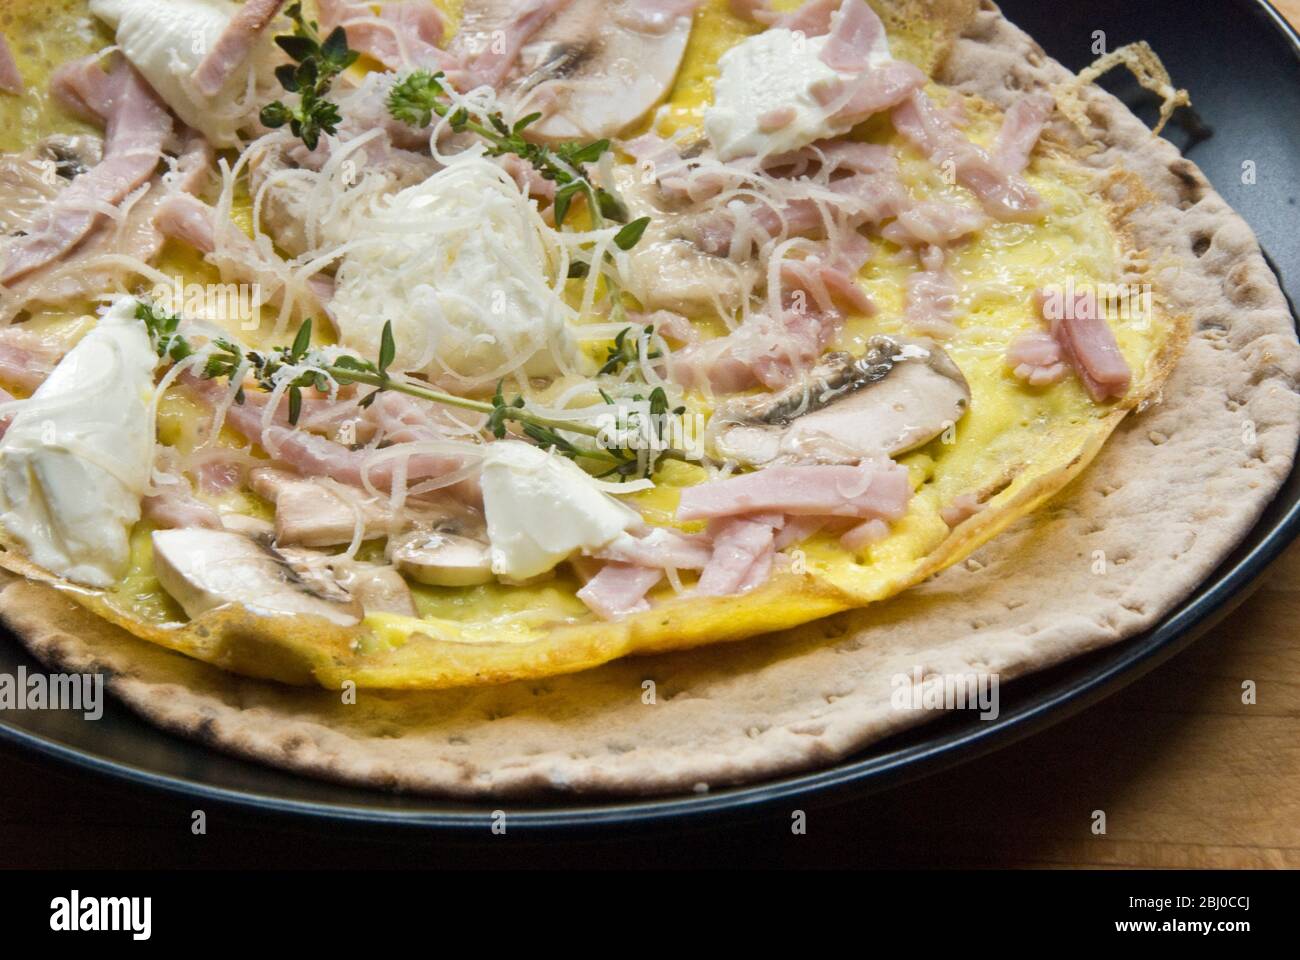 Omelette im dünnen Pfannkuchen-Stil mit Pilz, Schinken, Ziegenkäse und Parmesan auf dünnem schwedischen Brot, bevor es als tragbares Frühstück aufgerollt wird. - Stockfoto